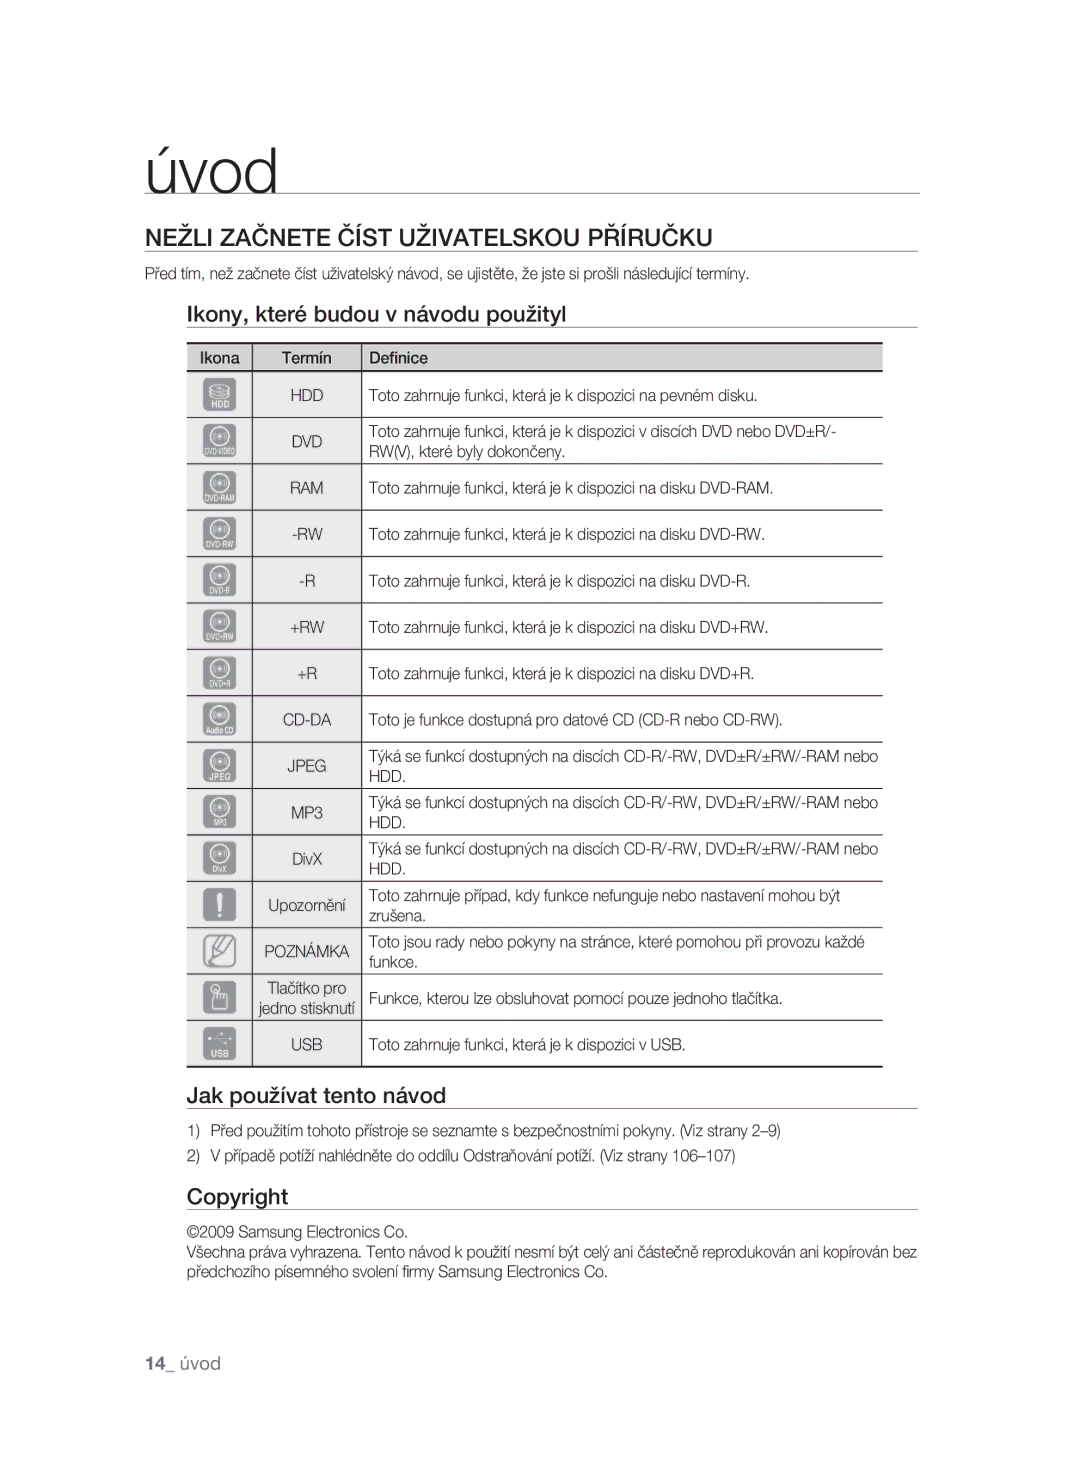 Samsung DVD-SH895/EDC manual Nežli Začnete Číst Uživatelskou Příručku, Ikony, které budou v návodu použityl, Copyright, Hdd 